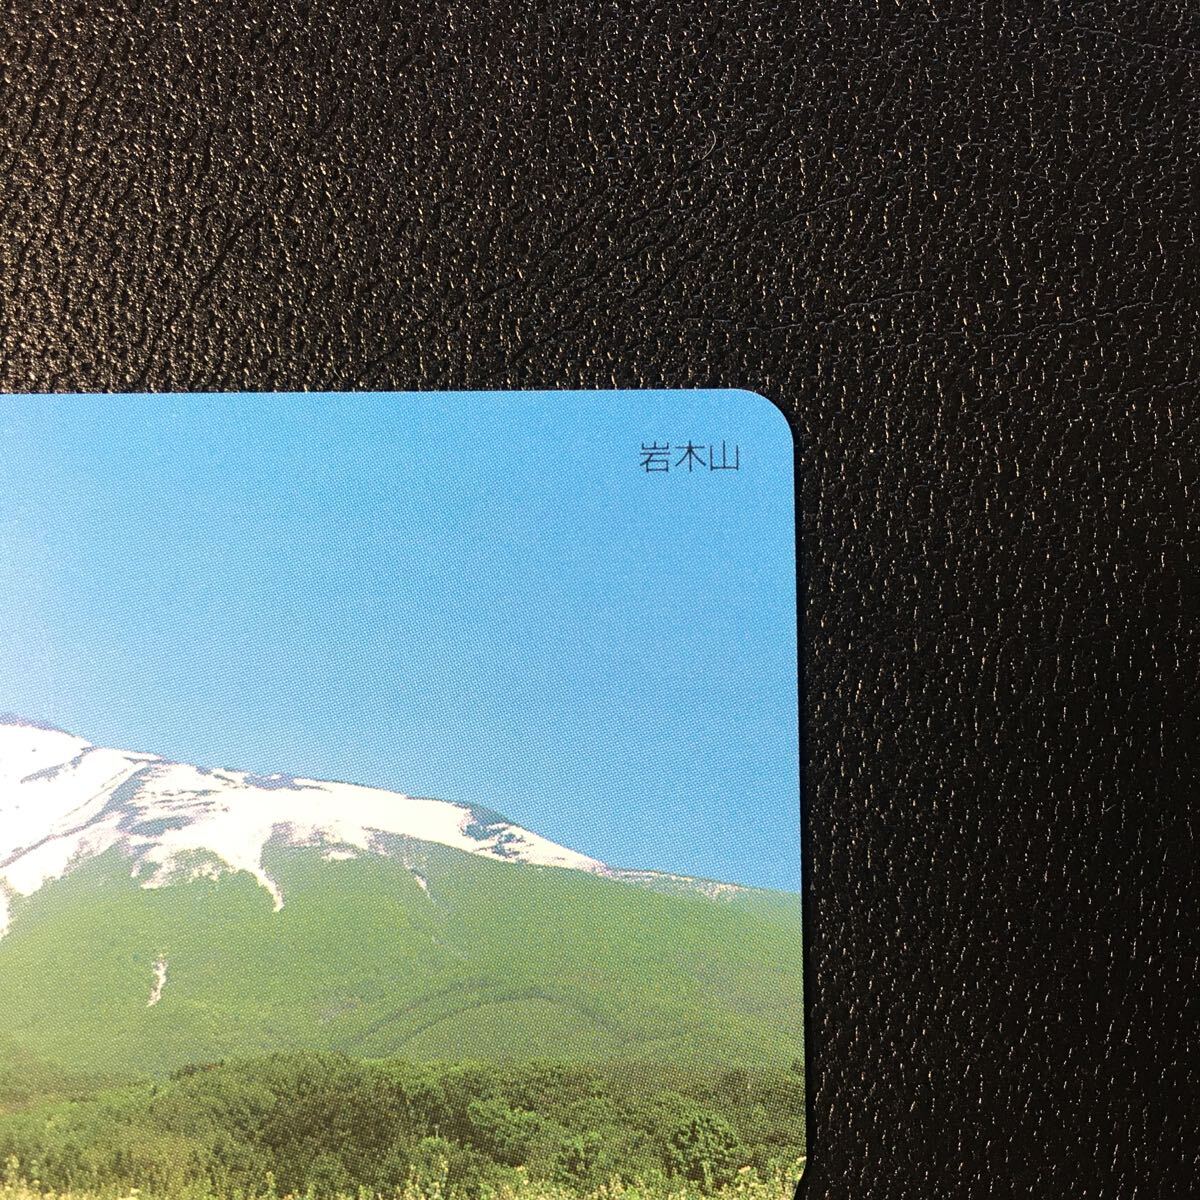 1999年5月1日発売柄ー日本の風景シリーズ「岩木山」後年再販版ー阪急ラガールカード(使用済スルッとKANSAI)_画像2